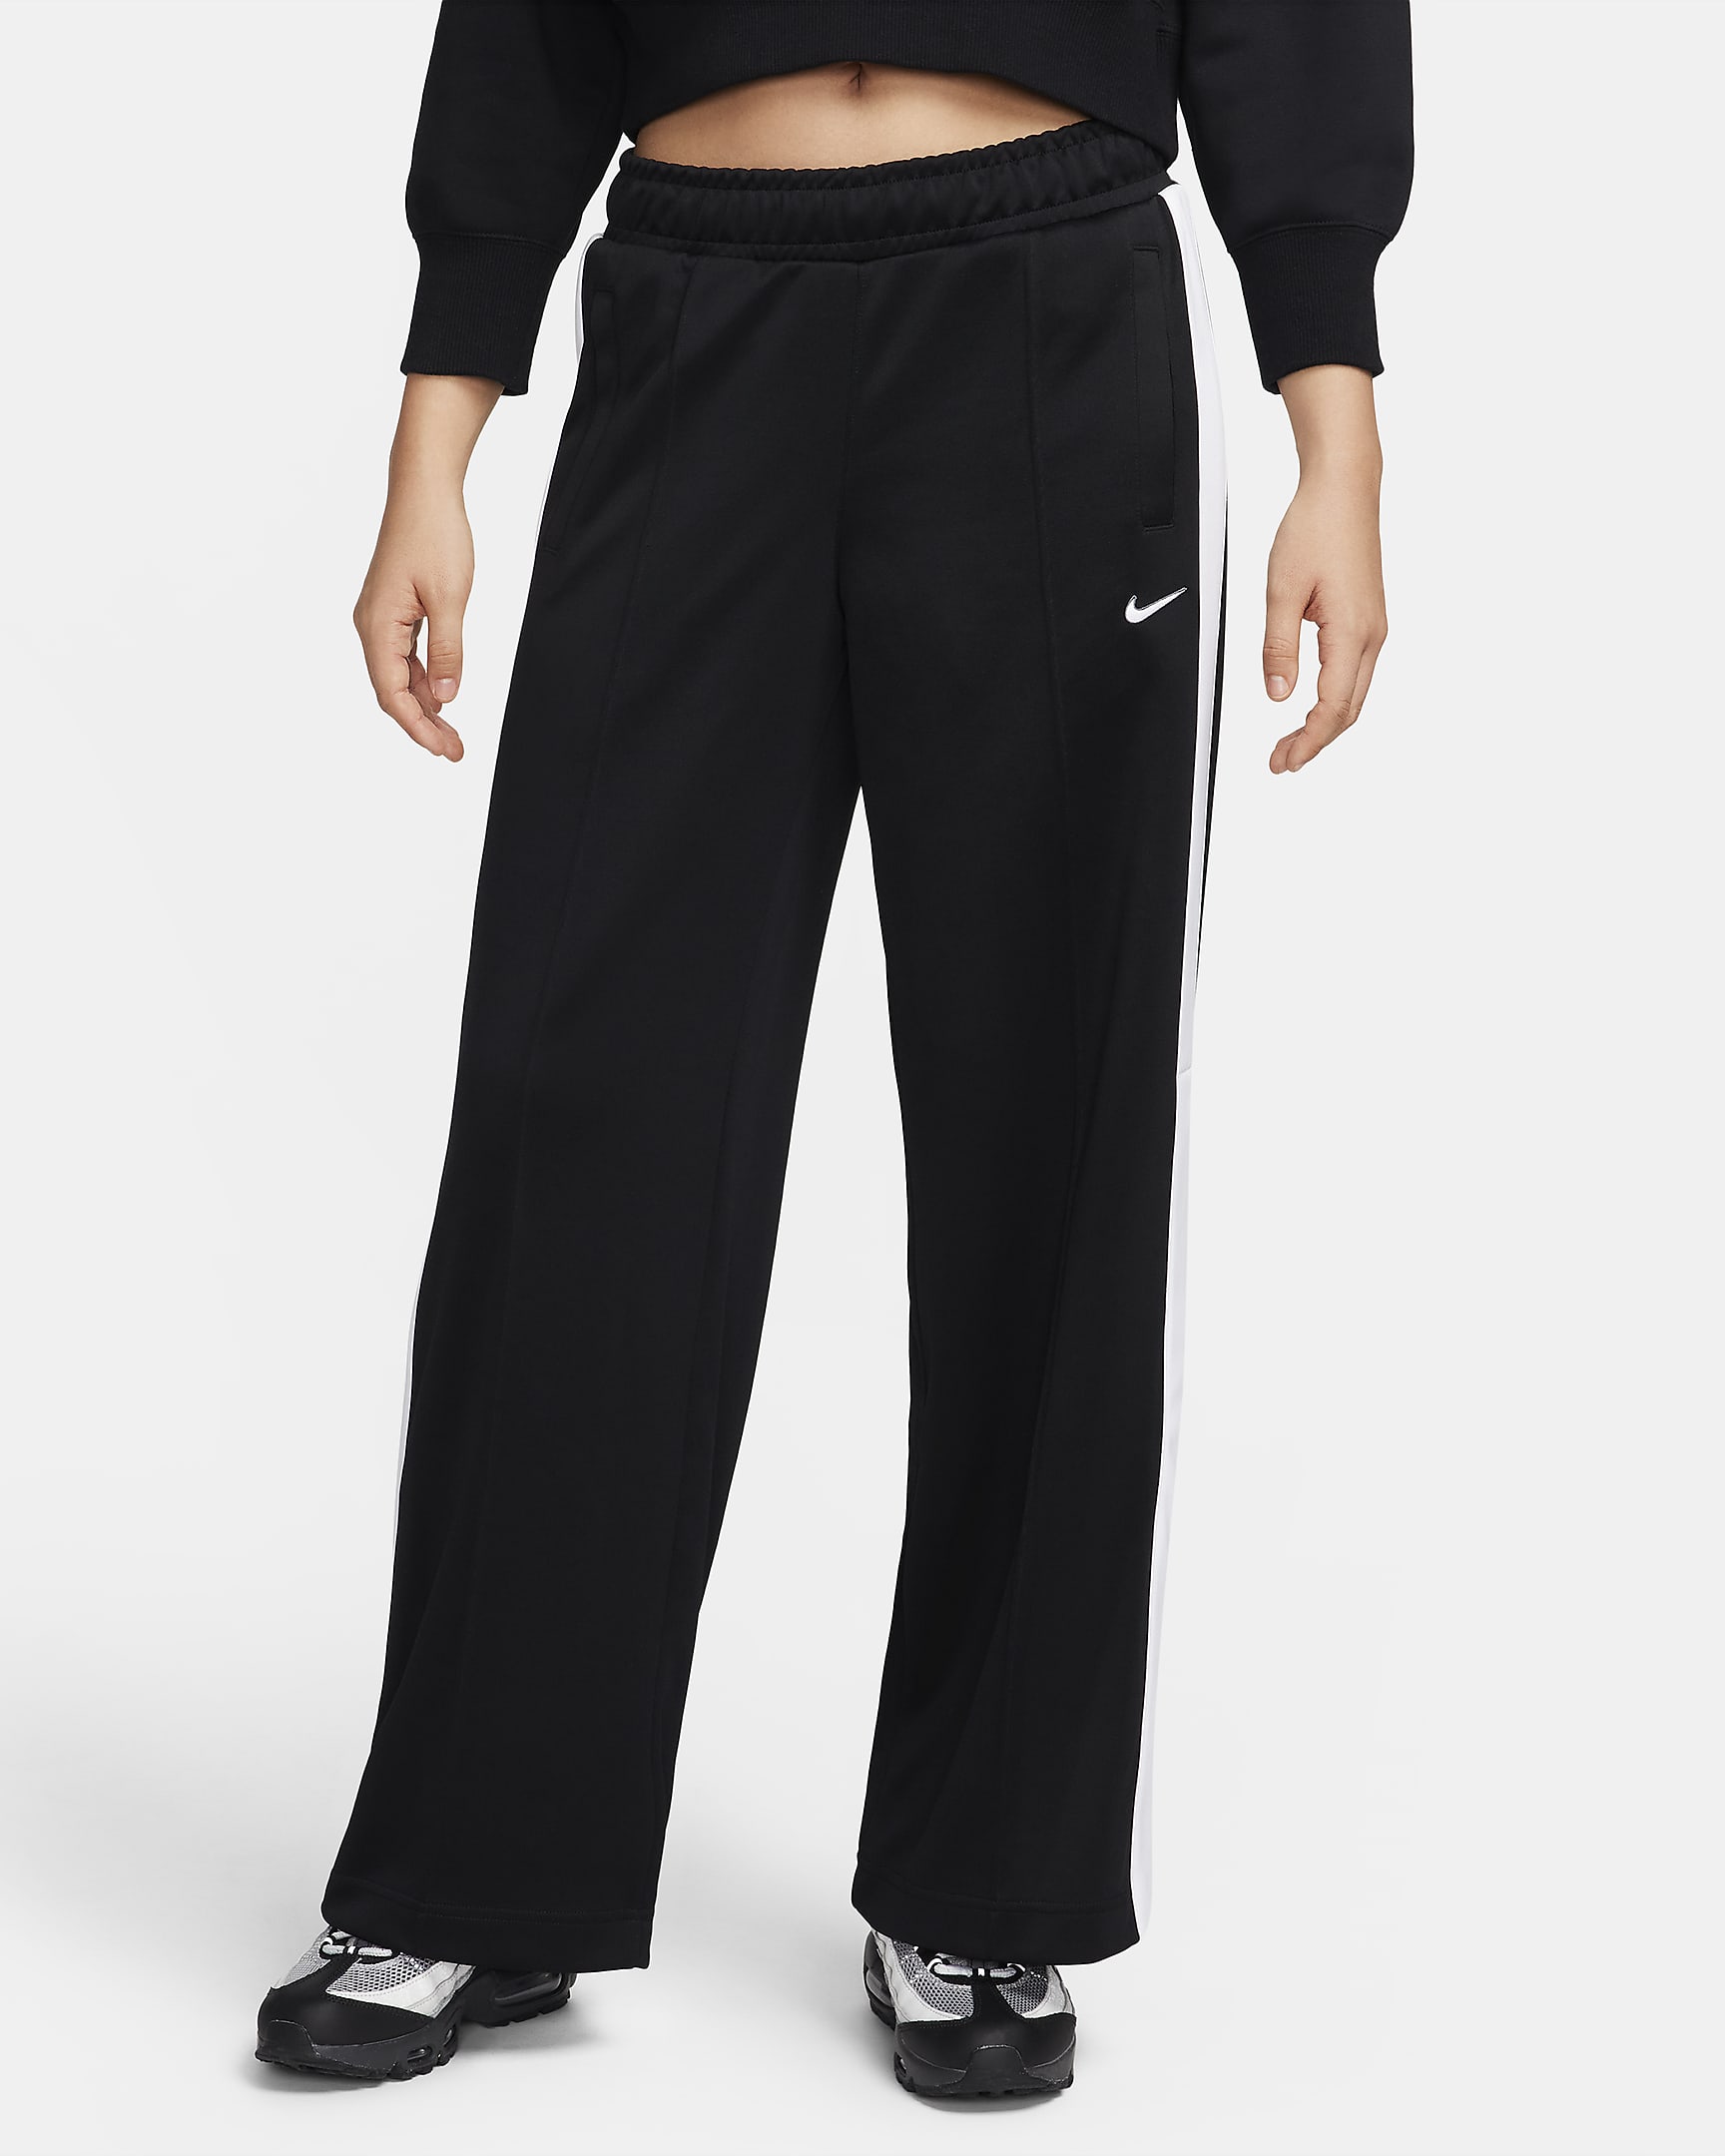 Nike Sportswear Women's Trousers. Nike UK